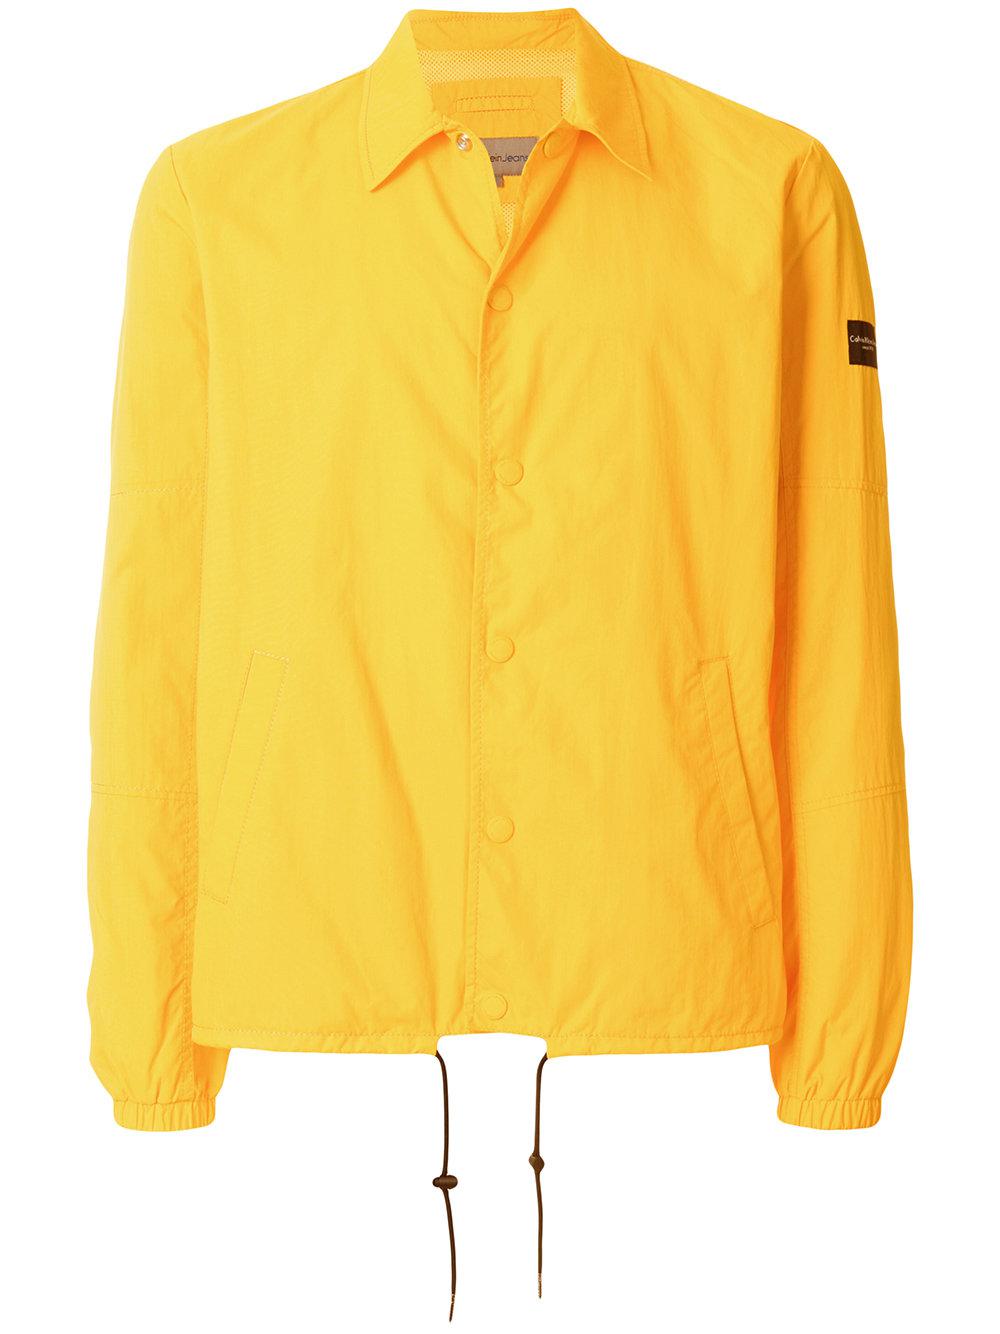 Calvin Klein Denim Cotton Jacket in Yellow & Orange (Yellow) for Men - Lyst